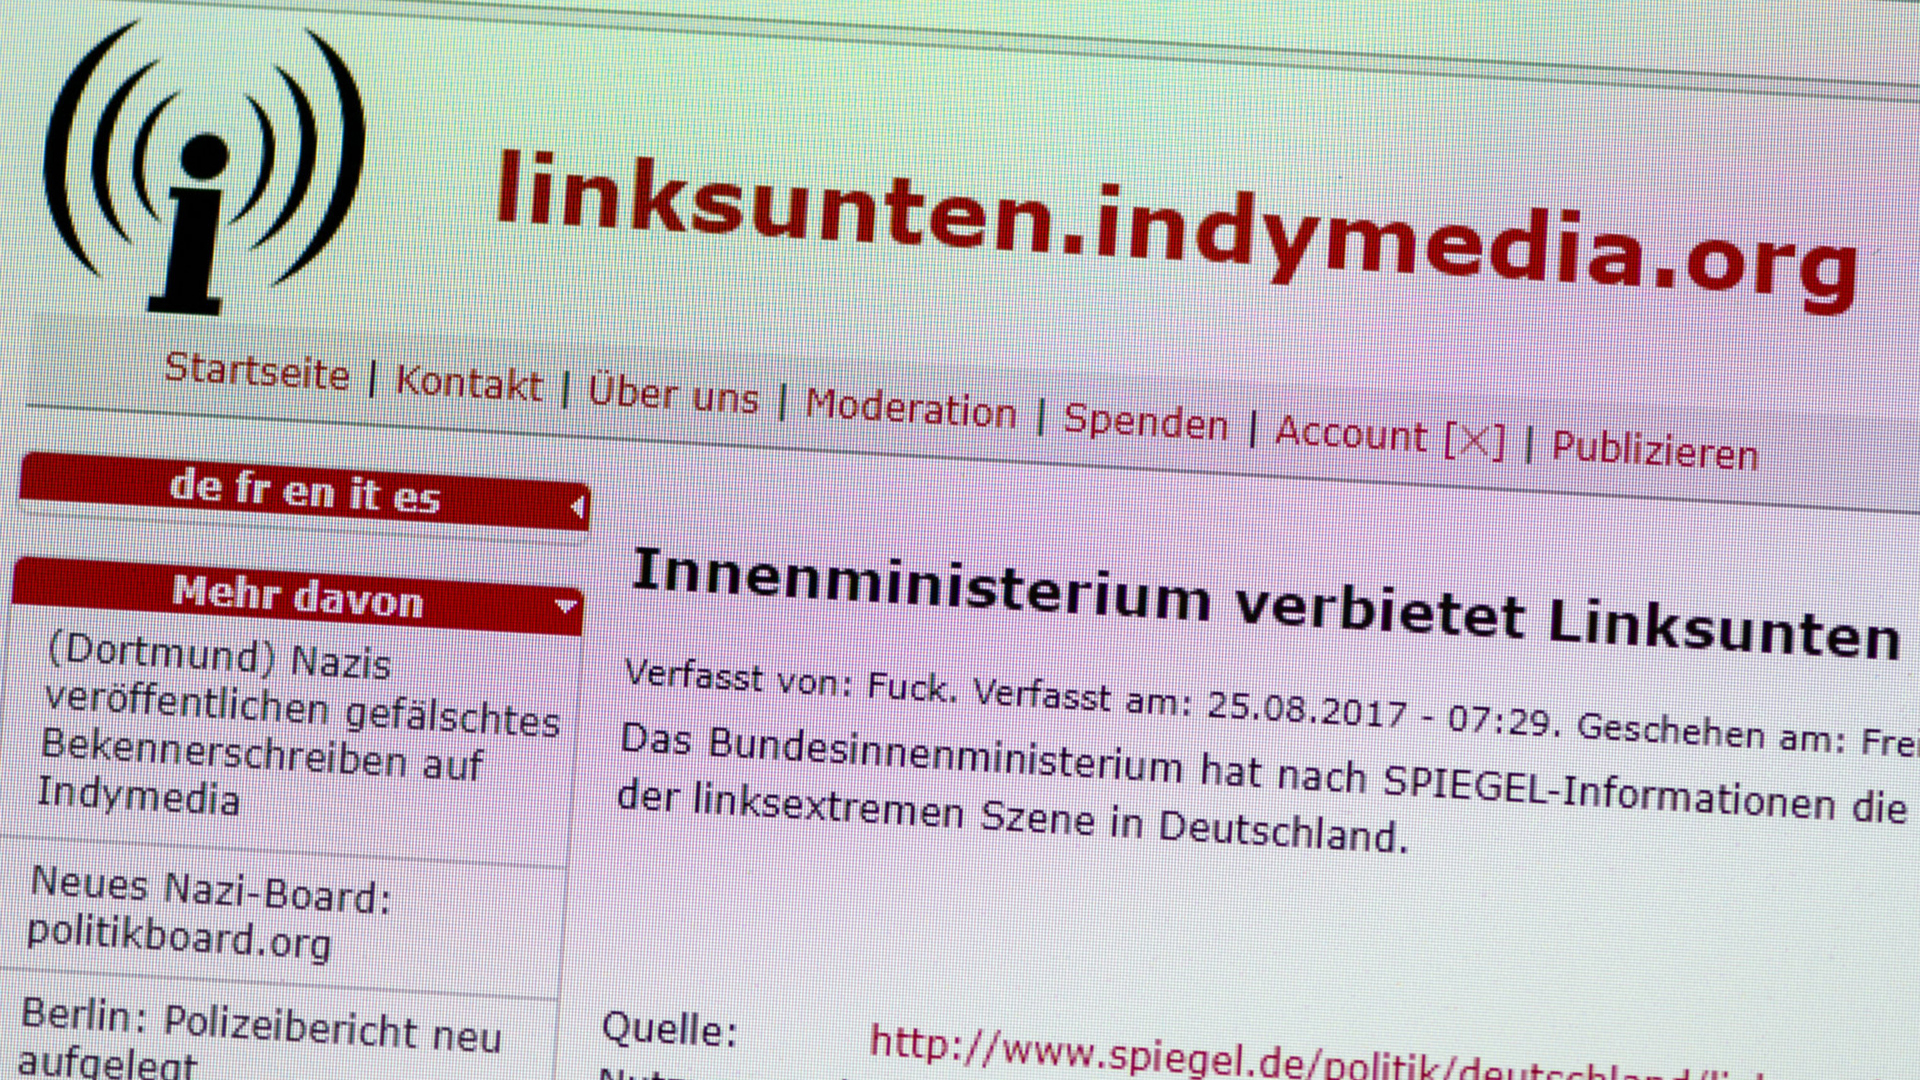 Die Internetseite der linksextremistischen Plattform "linksunten.indymedia.org" (Screenshot) | dpa